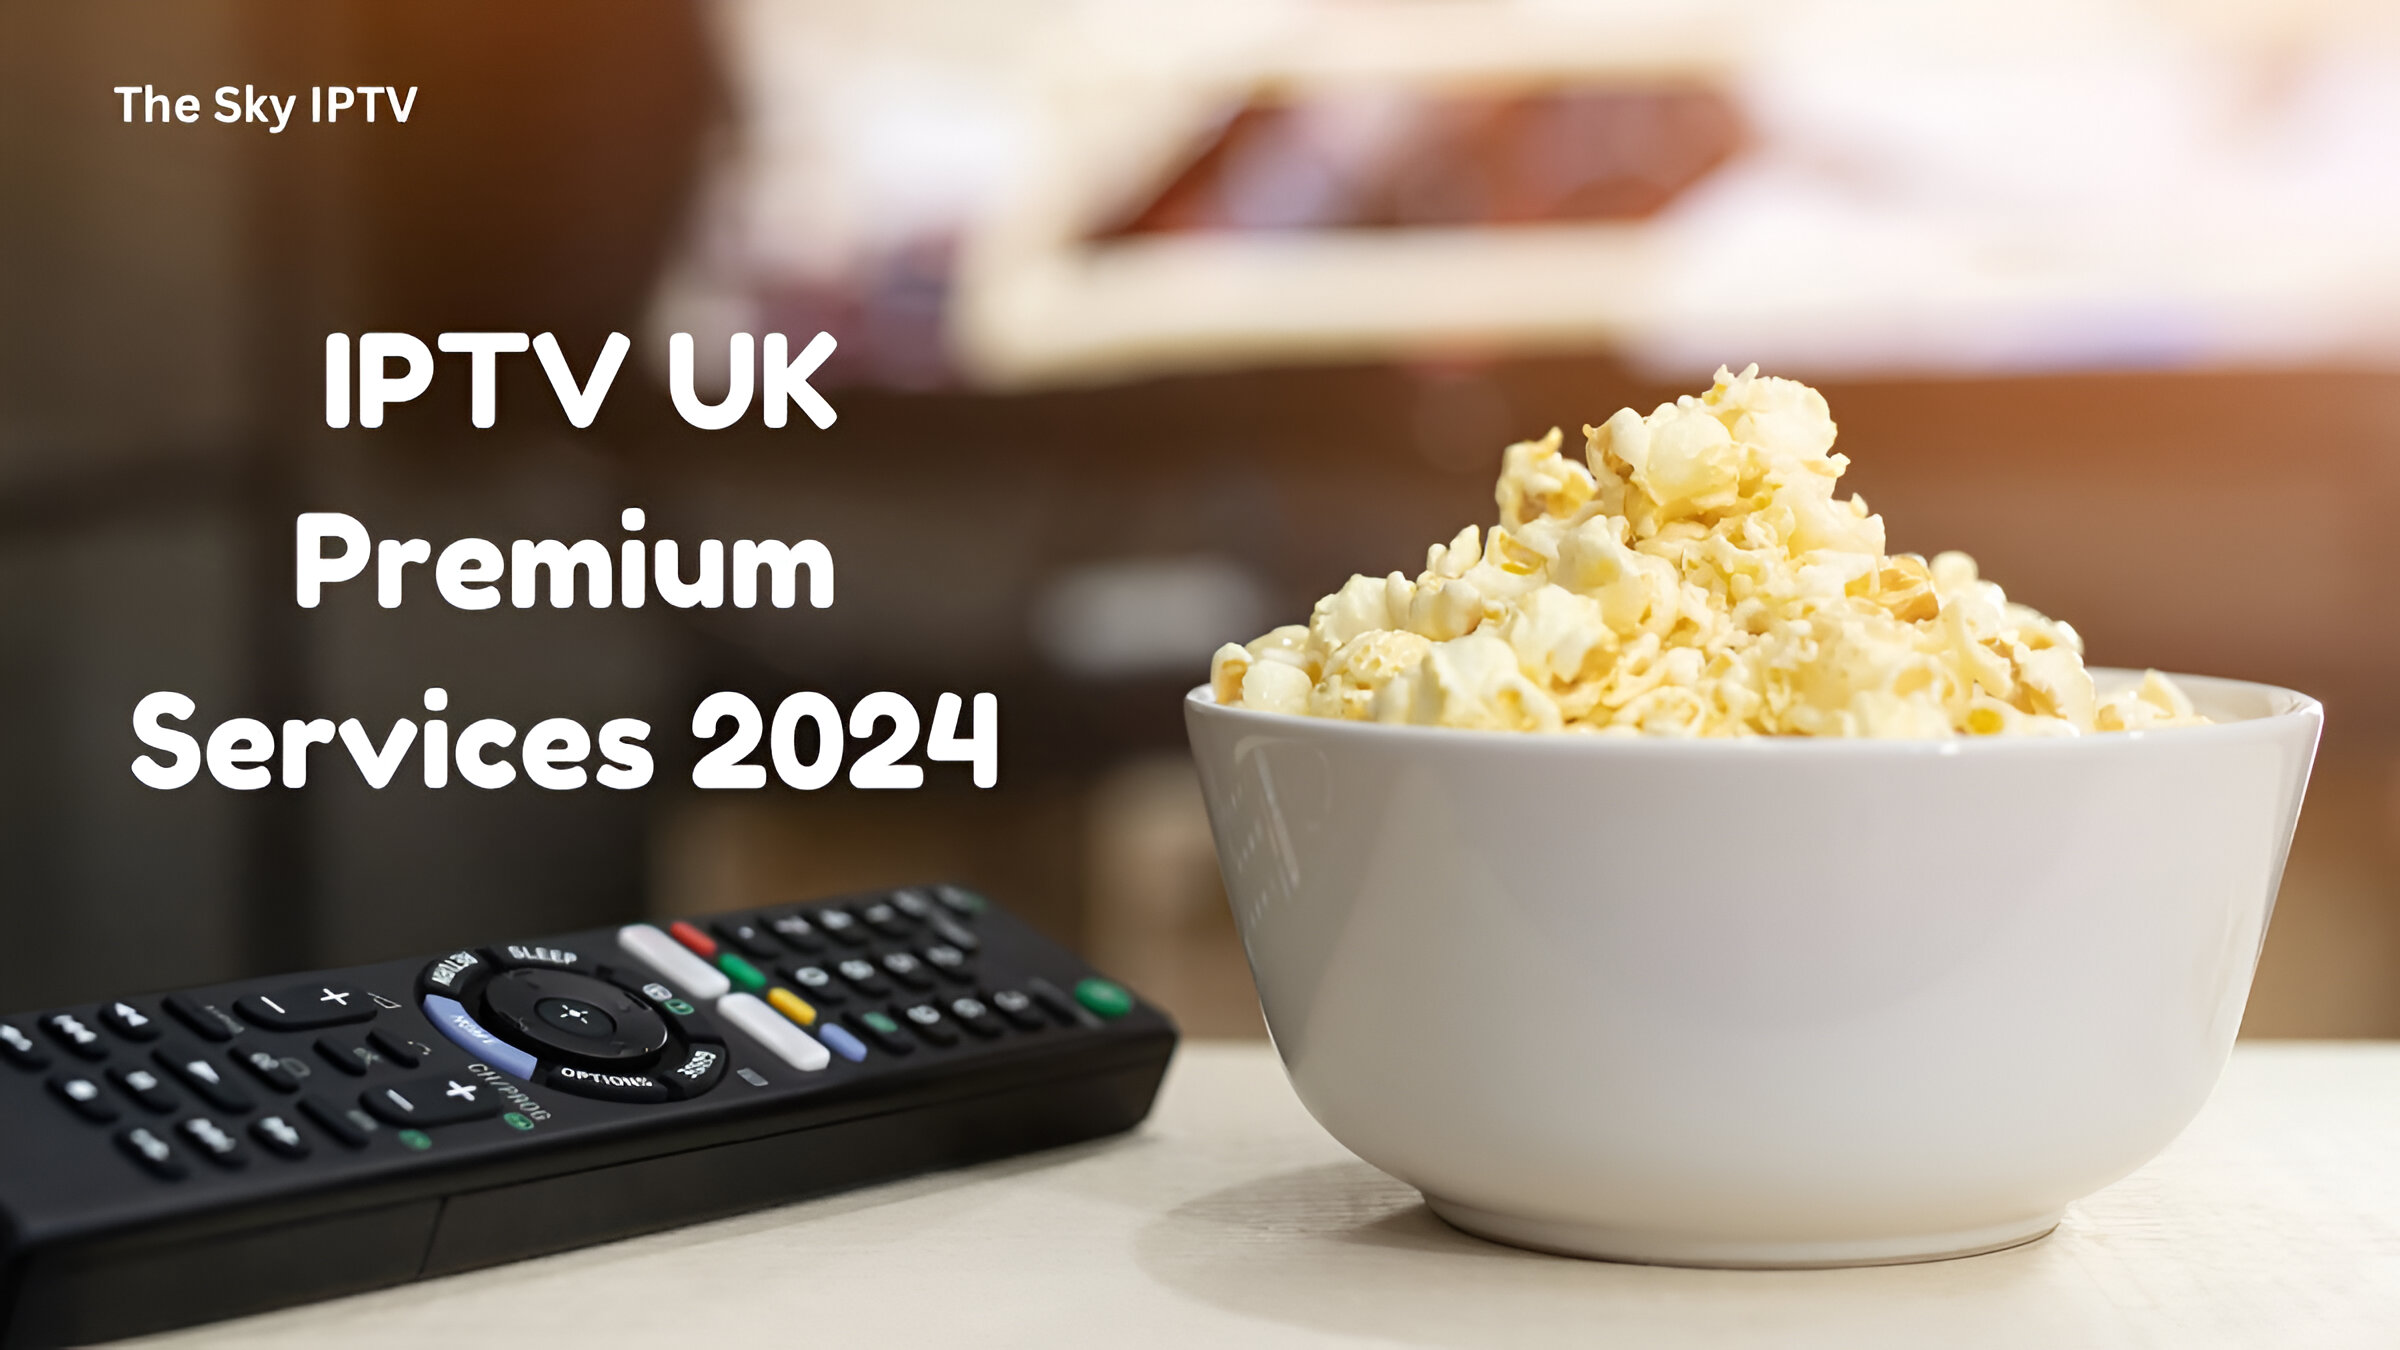 IPTV UK Premium Services 2024